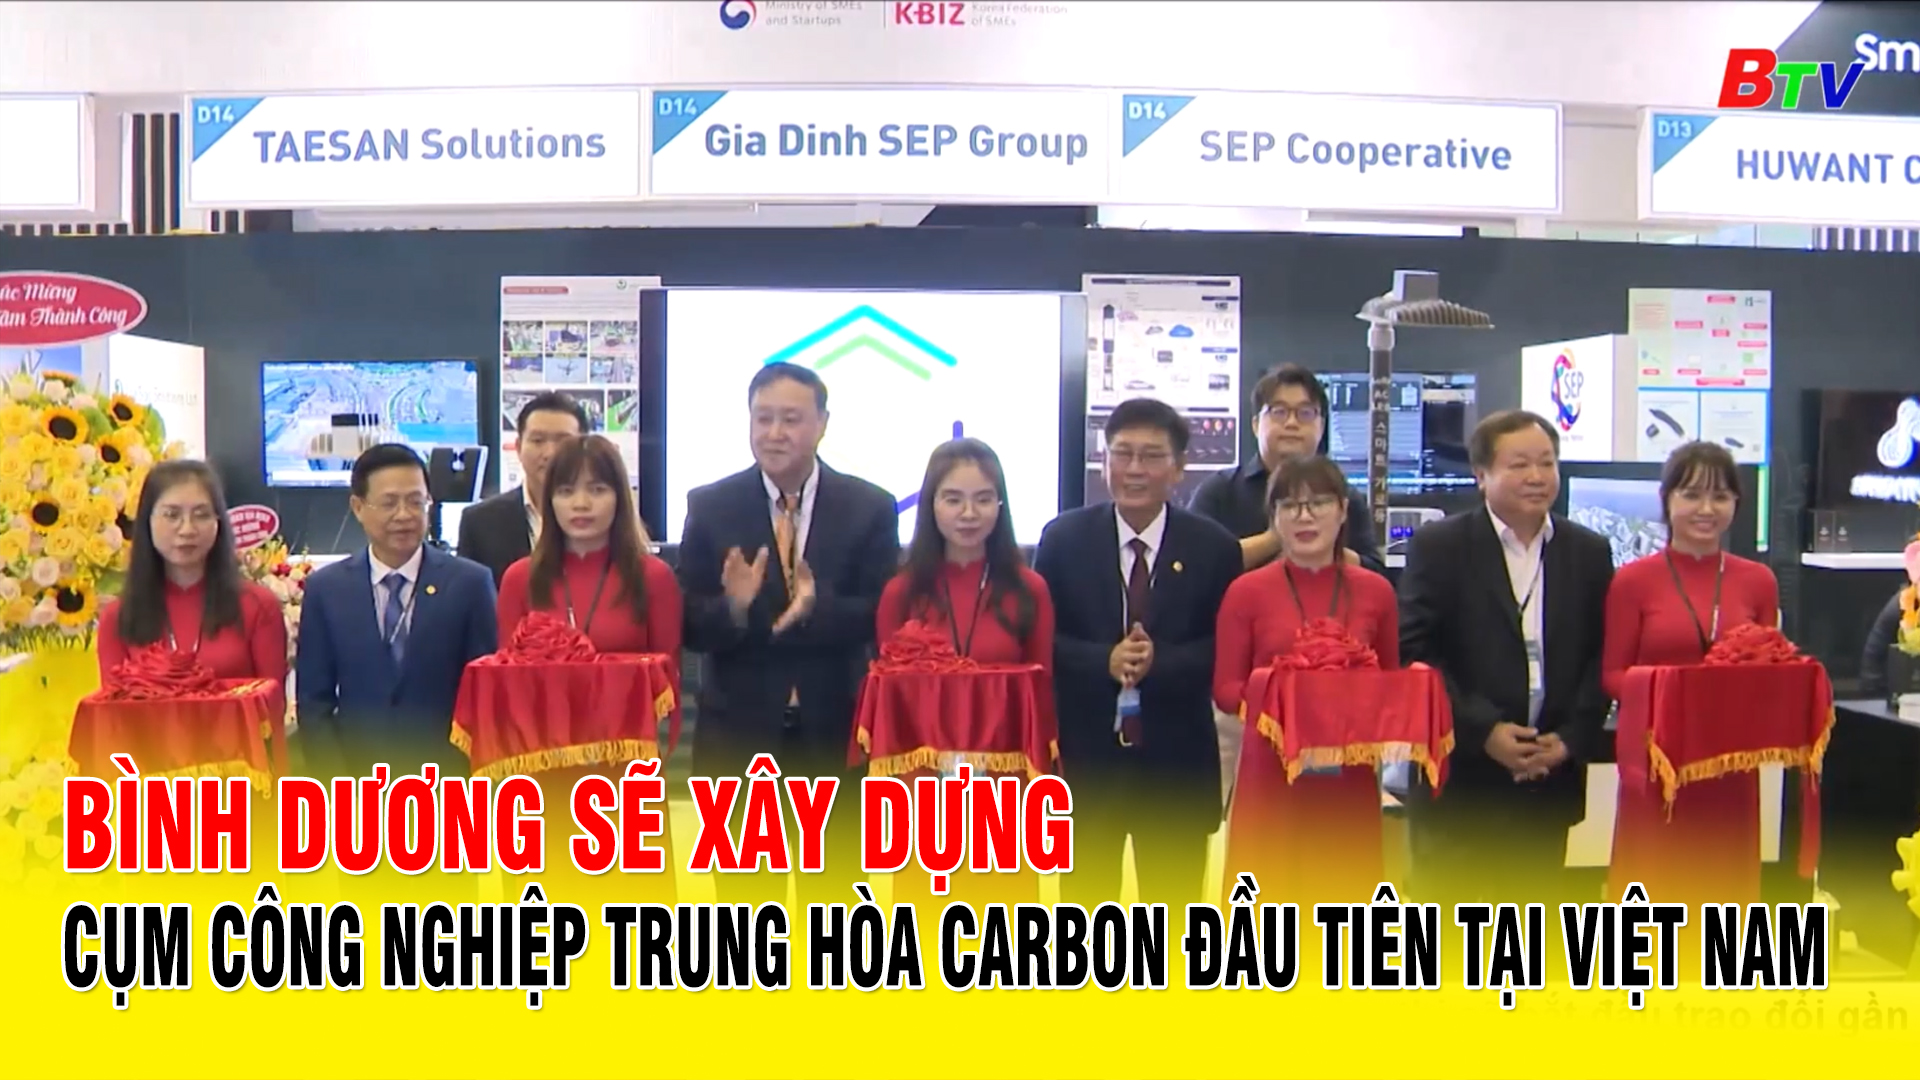 Bình Dương sẽ xây dựng cụm công nghiệp trung hòa carbon đầu tiên tại Việt Nam